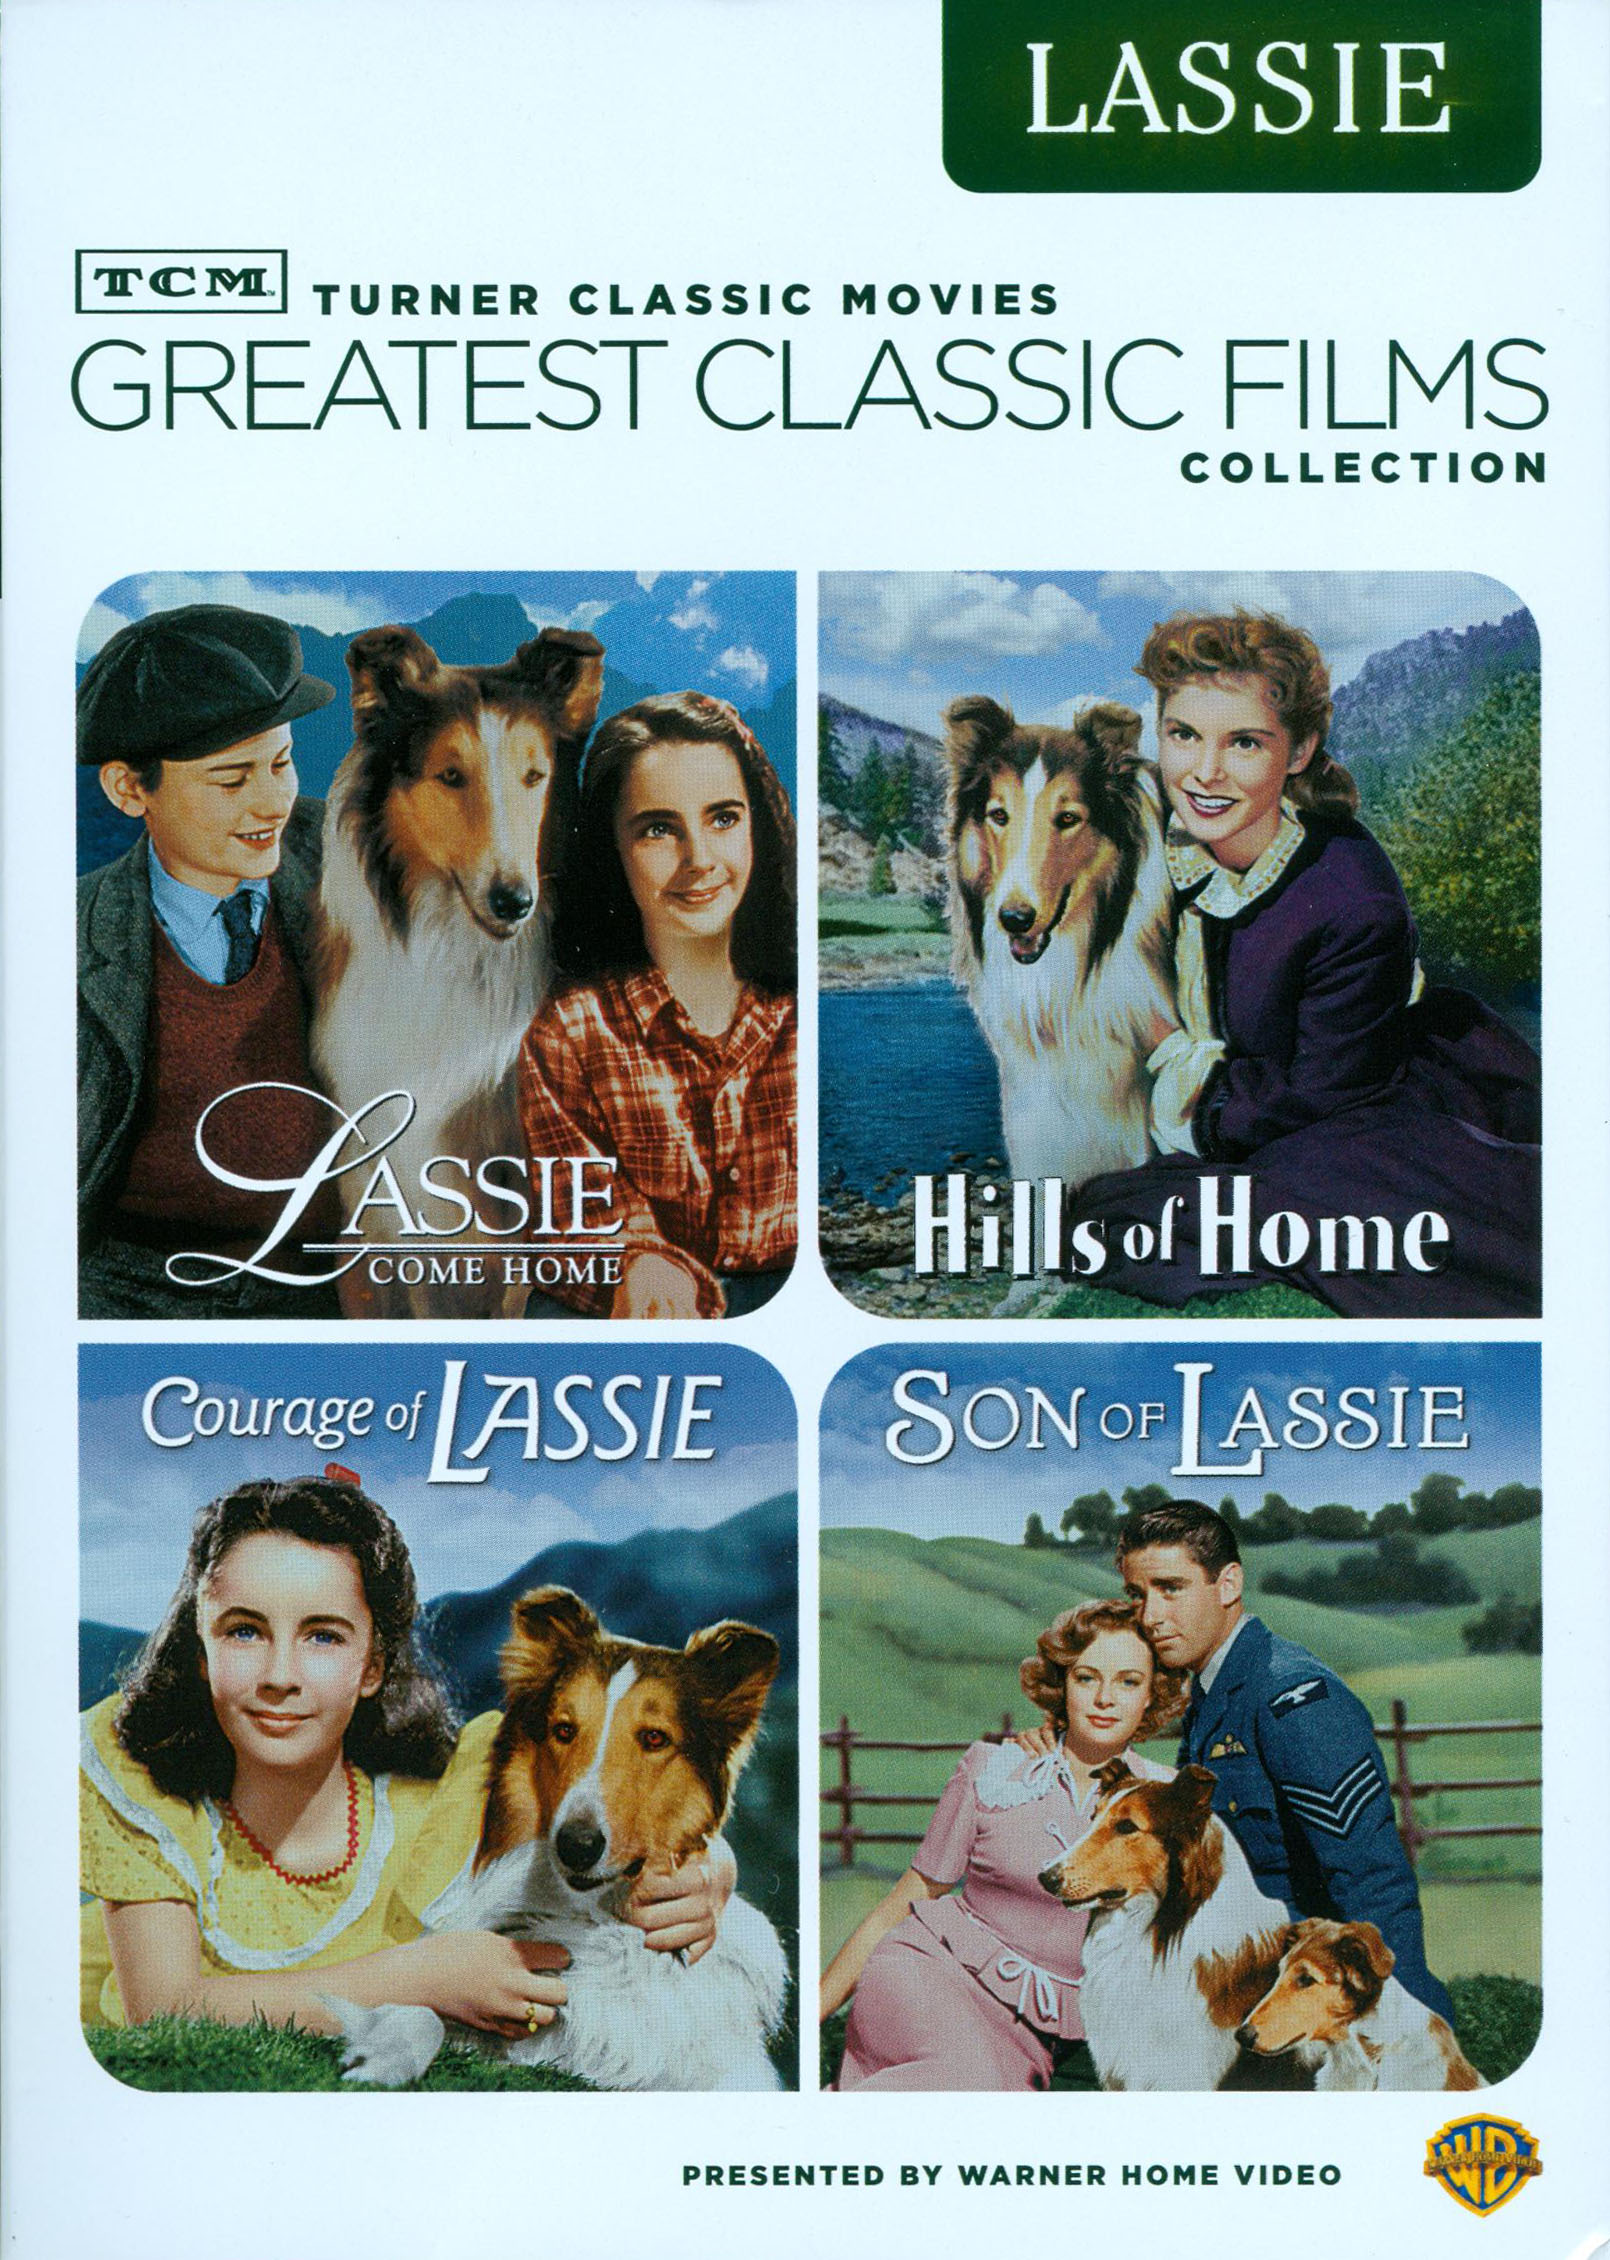 lassie movie